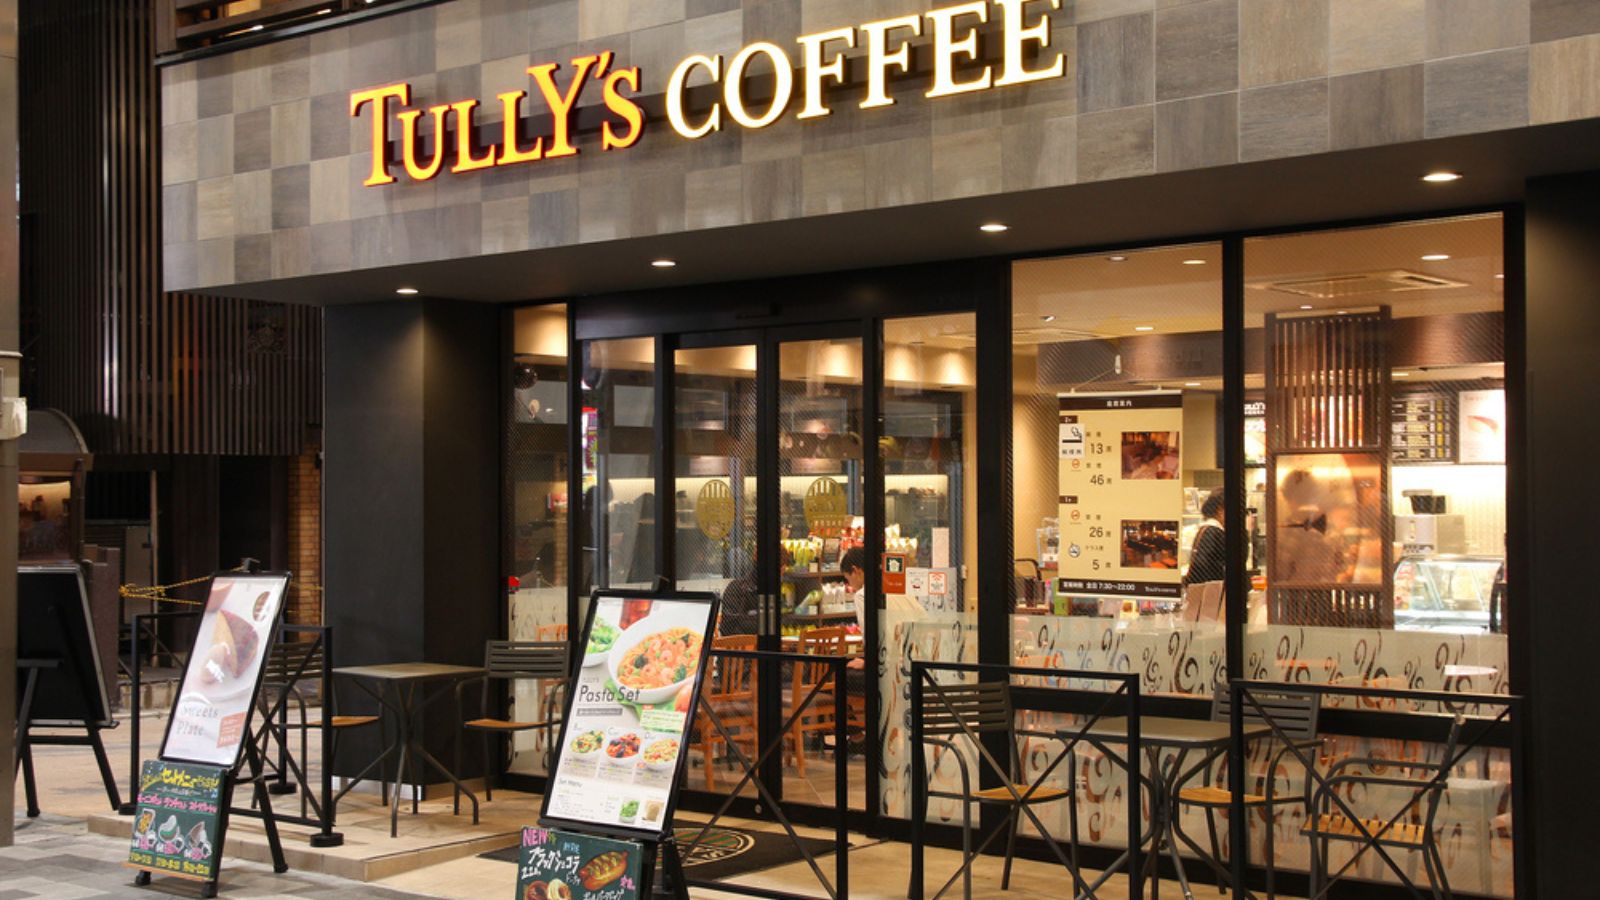 cửa hàng tully's cà phê tại nhật bản